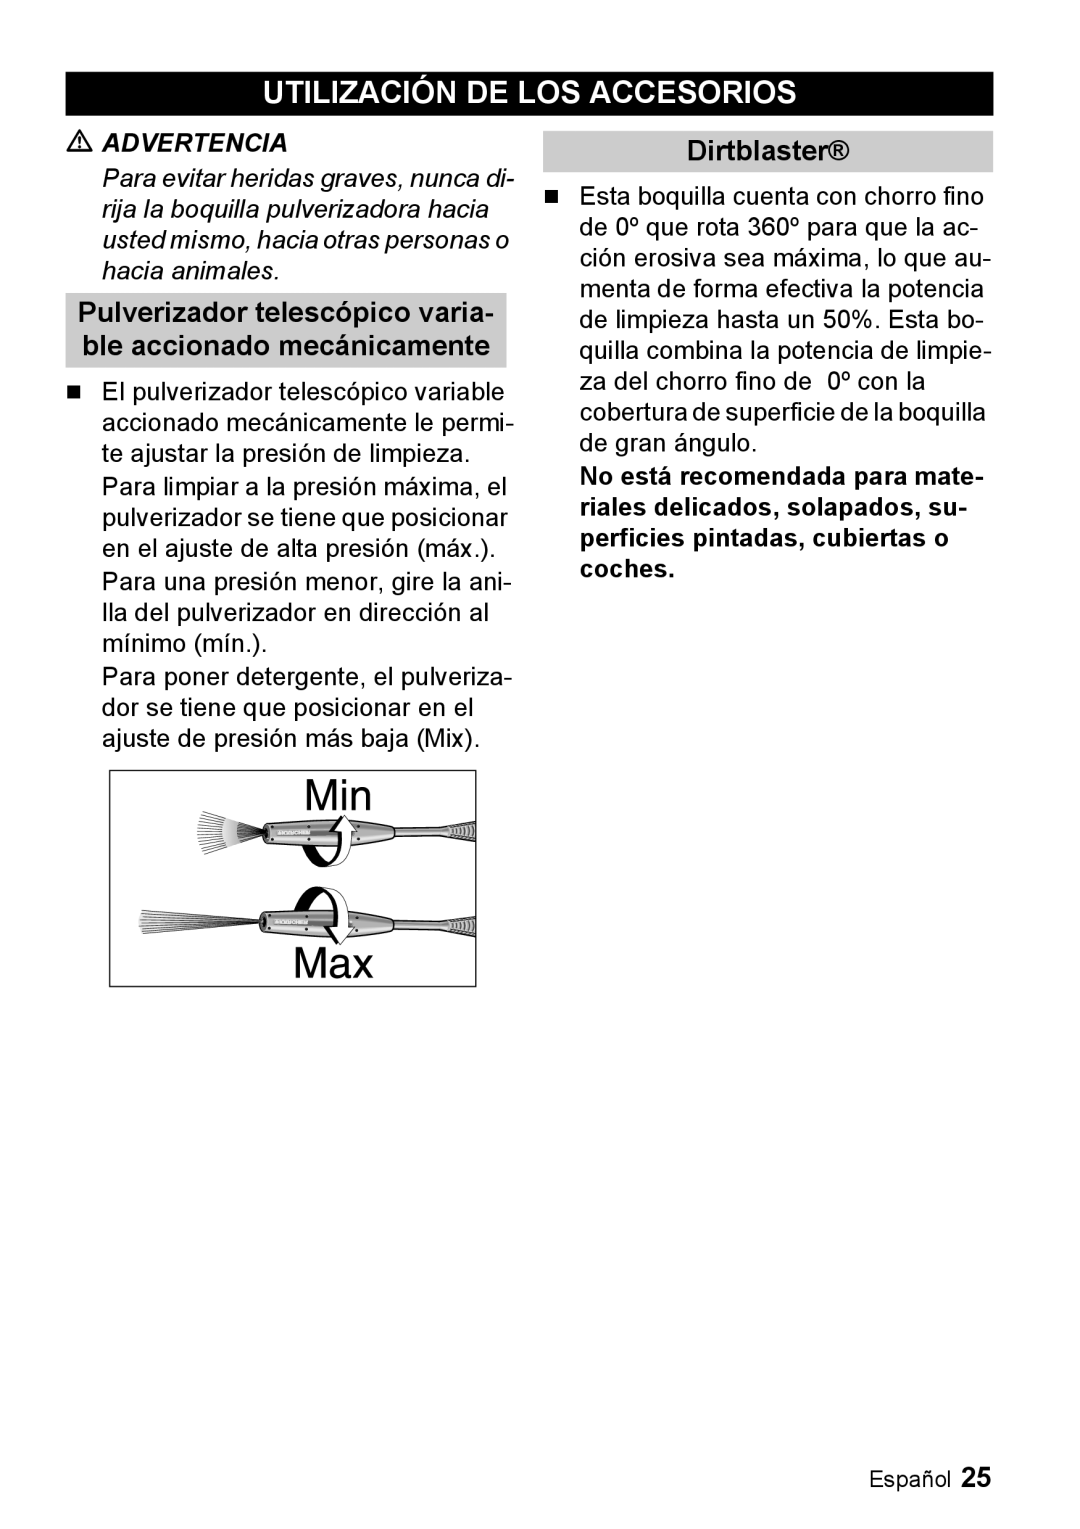 Karcher K 3.68 M manual Utilización De Los Accesorios, Dirtblaster 